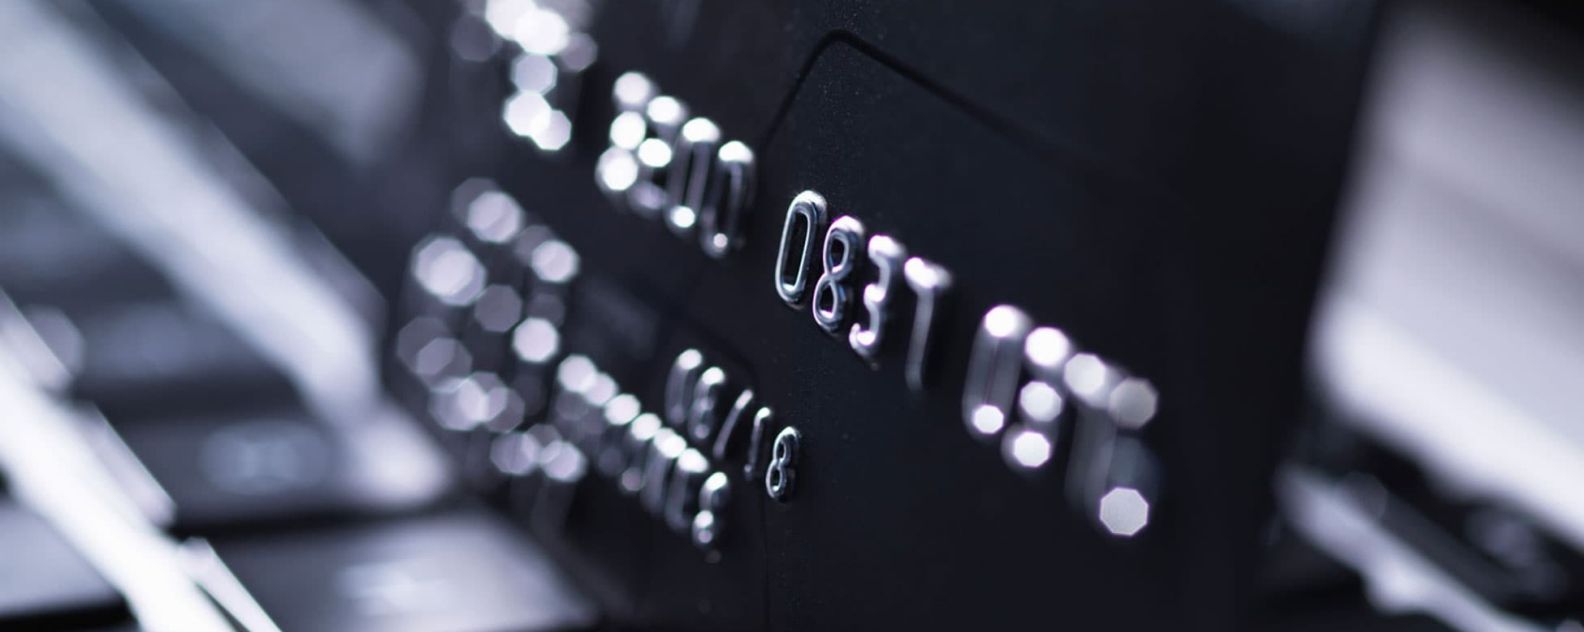 Cartão de crédito sobre um teclado